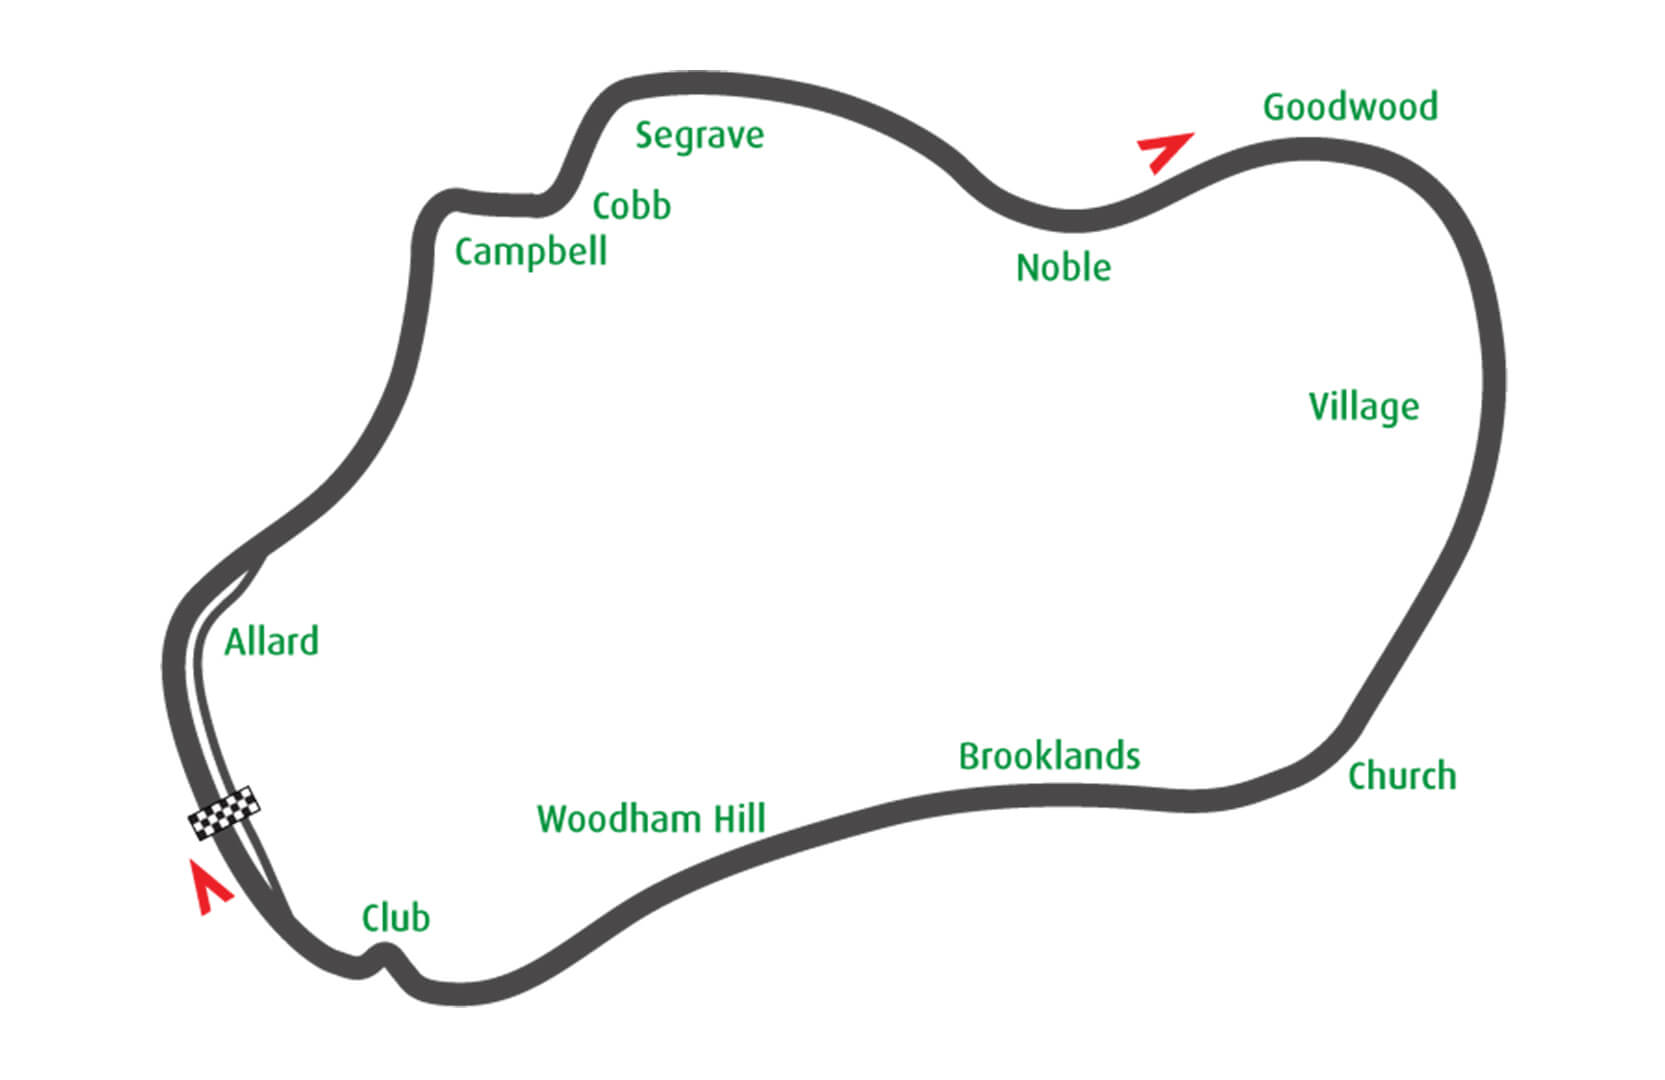 Thruxton Circuit